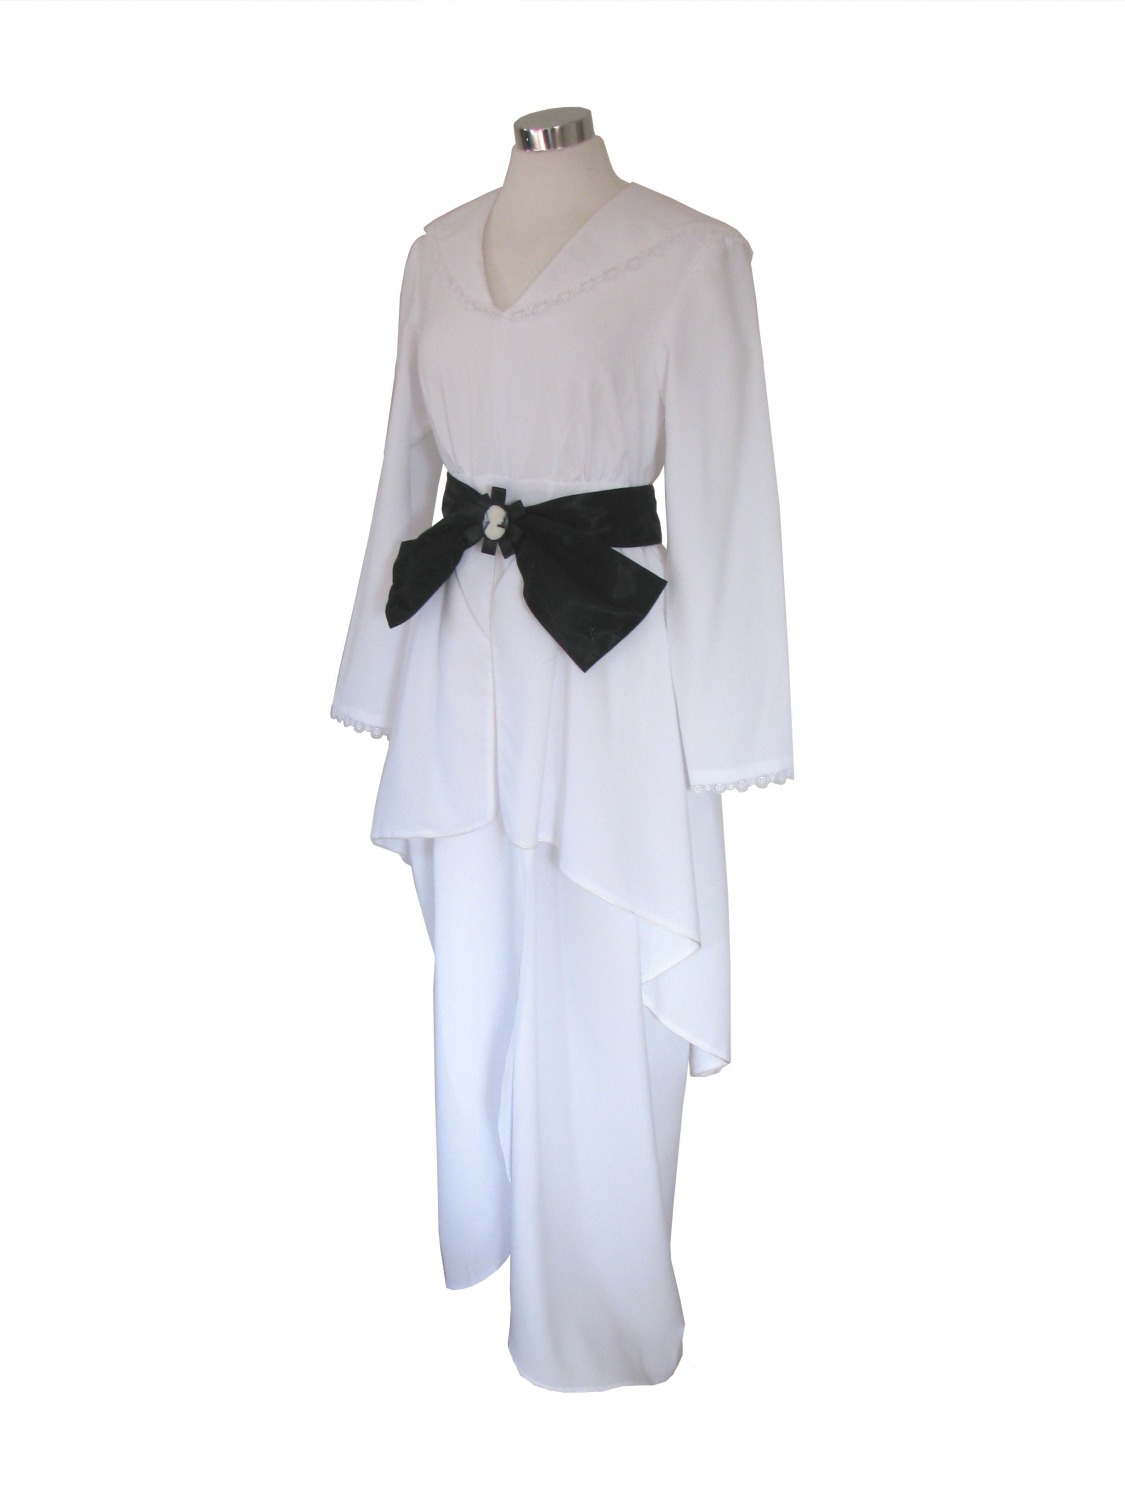 Ladies Edwardian Titanic Downton Abbey Costume Size 10 - 12 Image